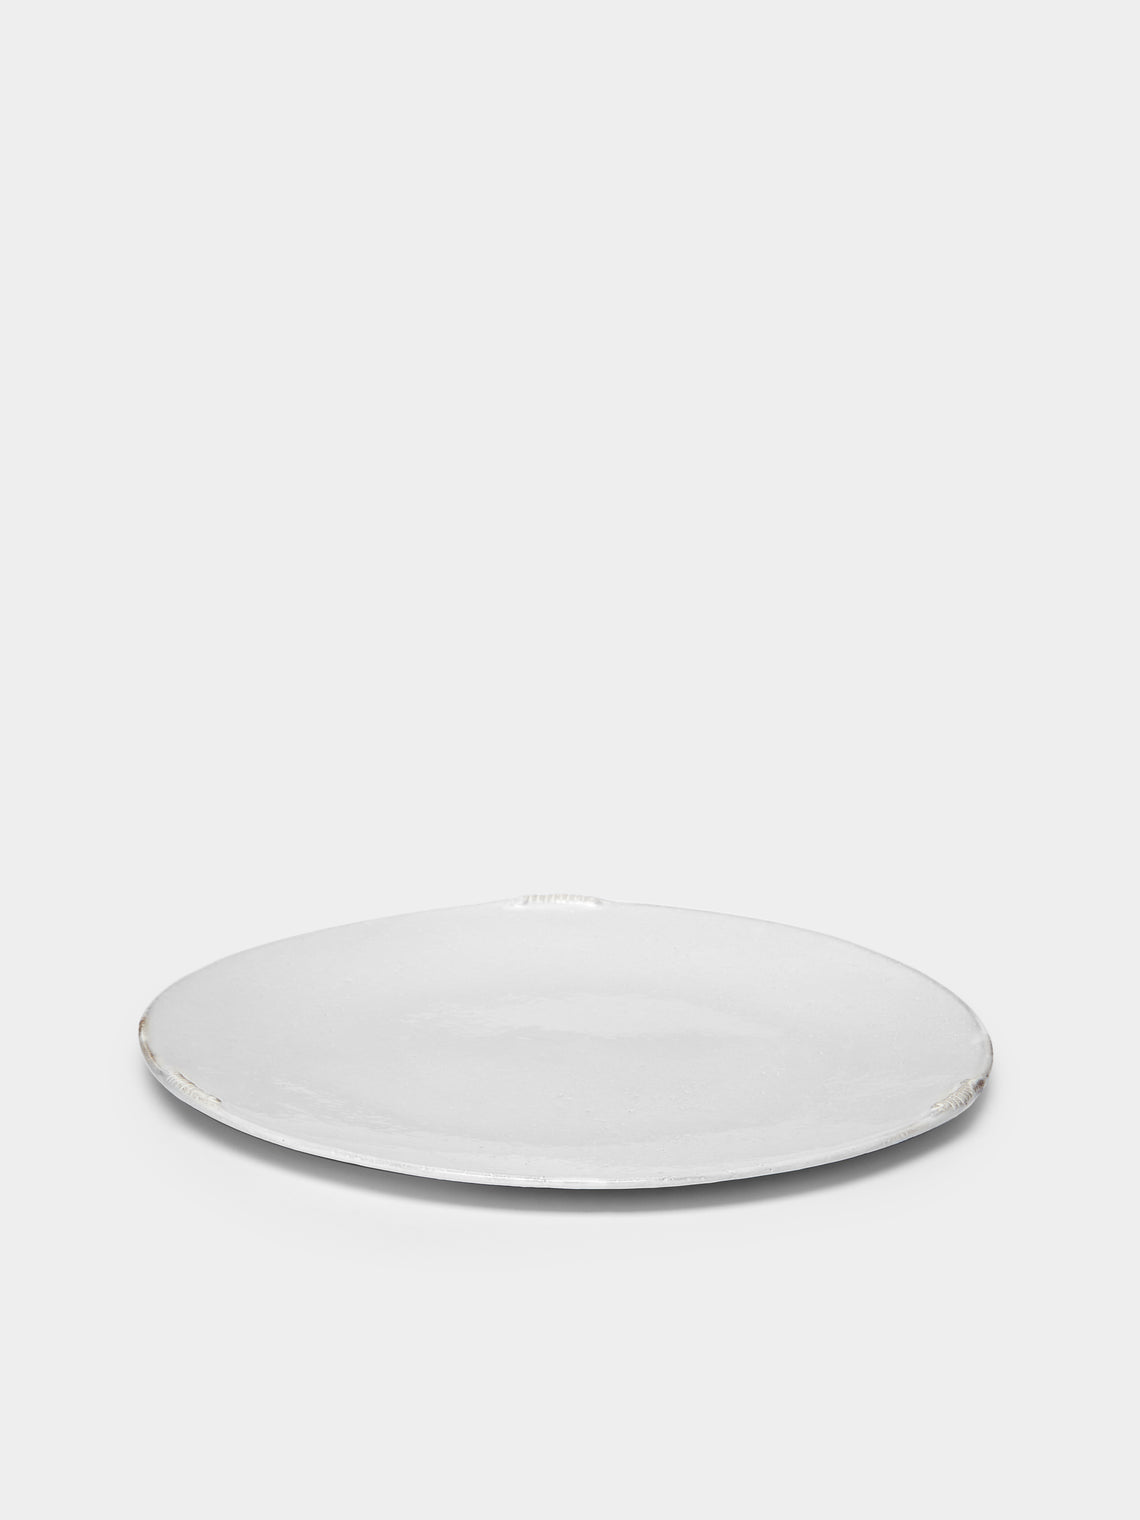 Astier de Villatte - Neptune Dinner Plate -  - ABASK